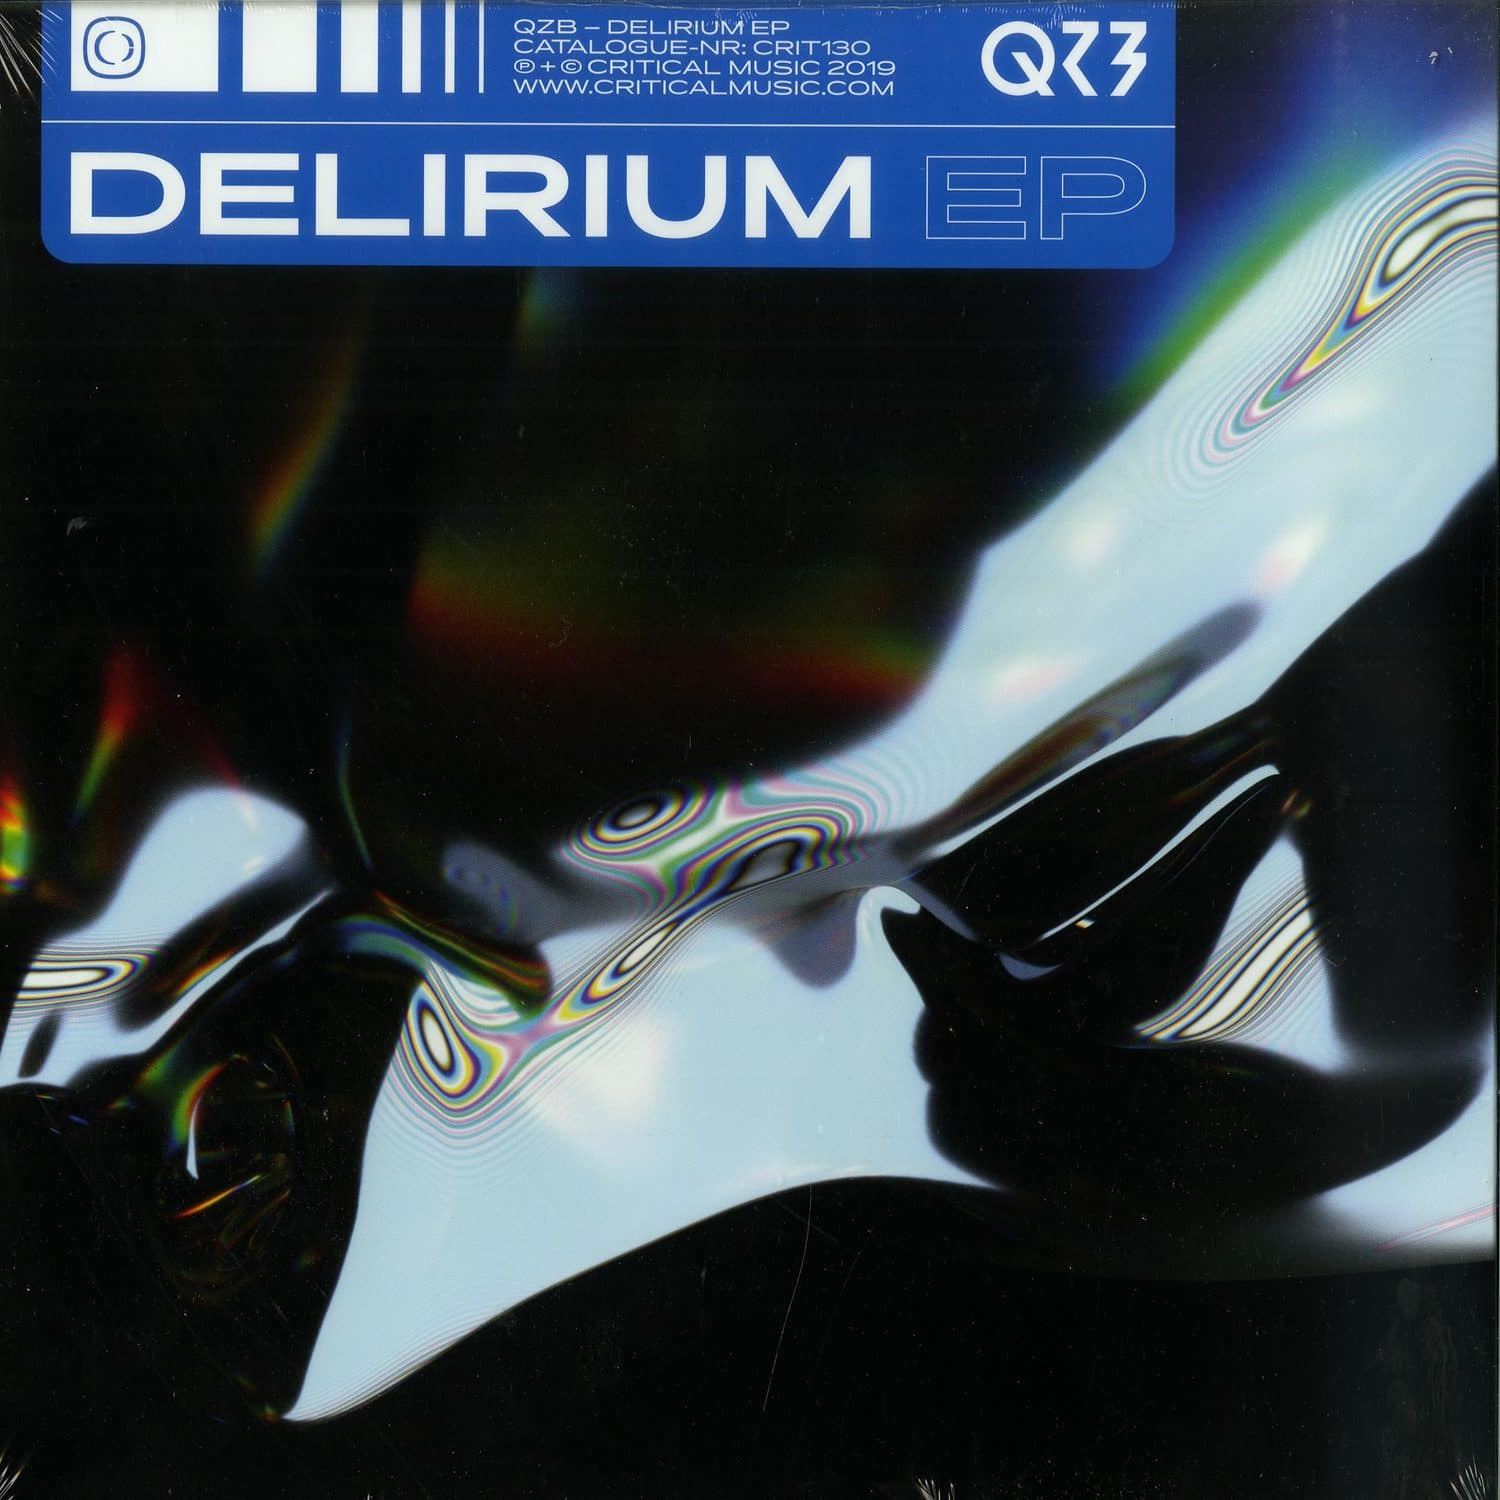 QZB - DELERIUM EP 